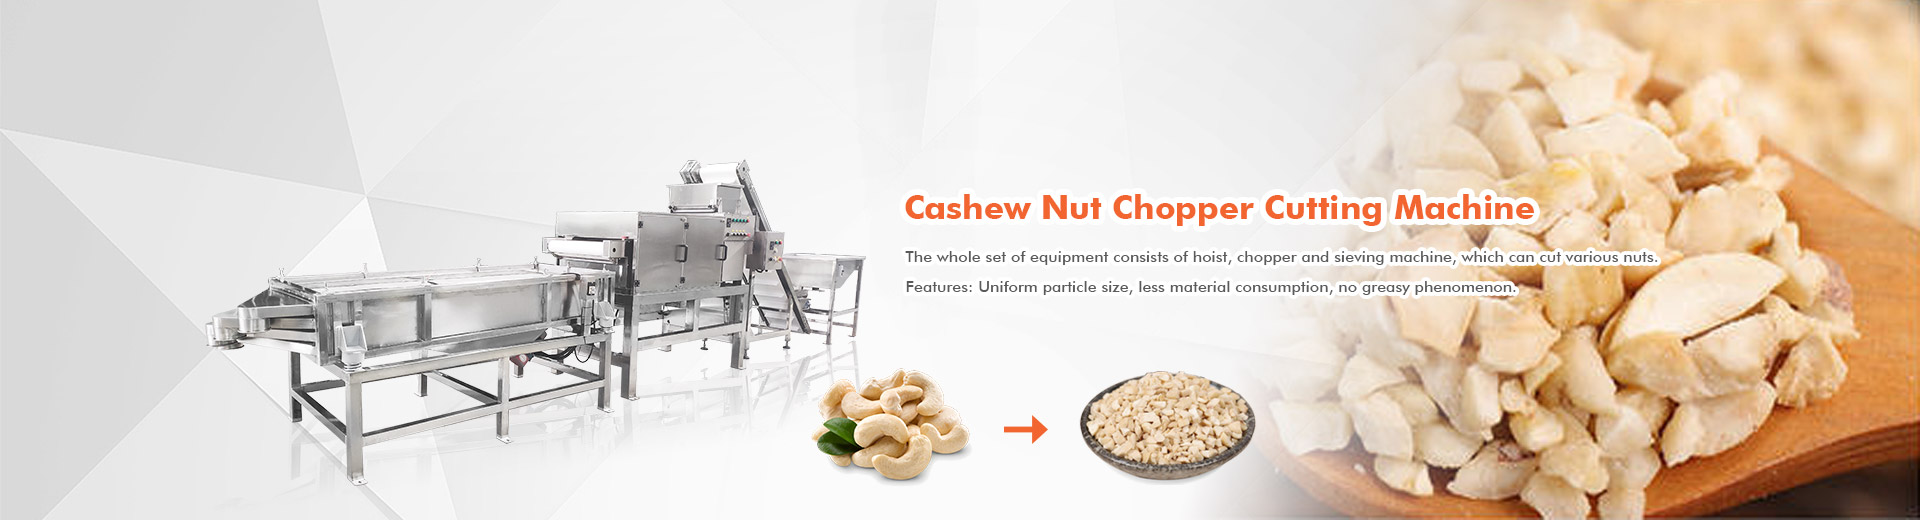 Cashew Nut Chopper Cutting Mach